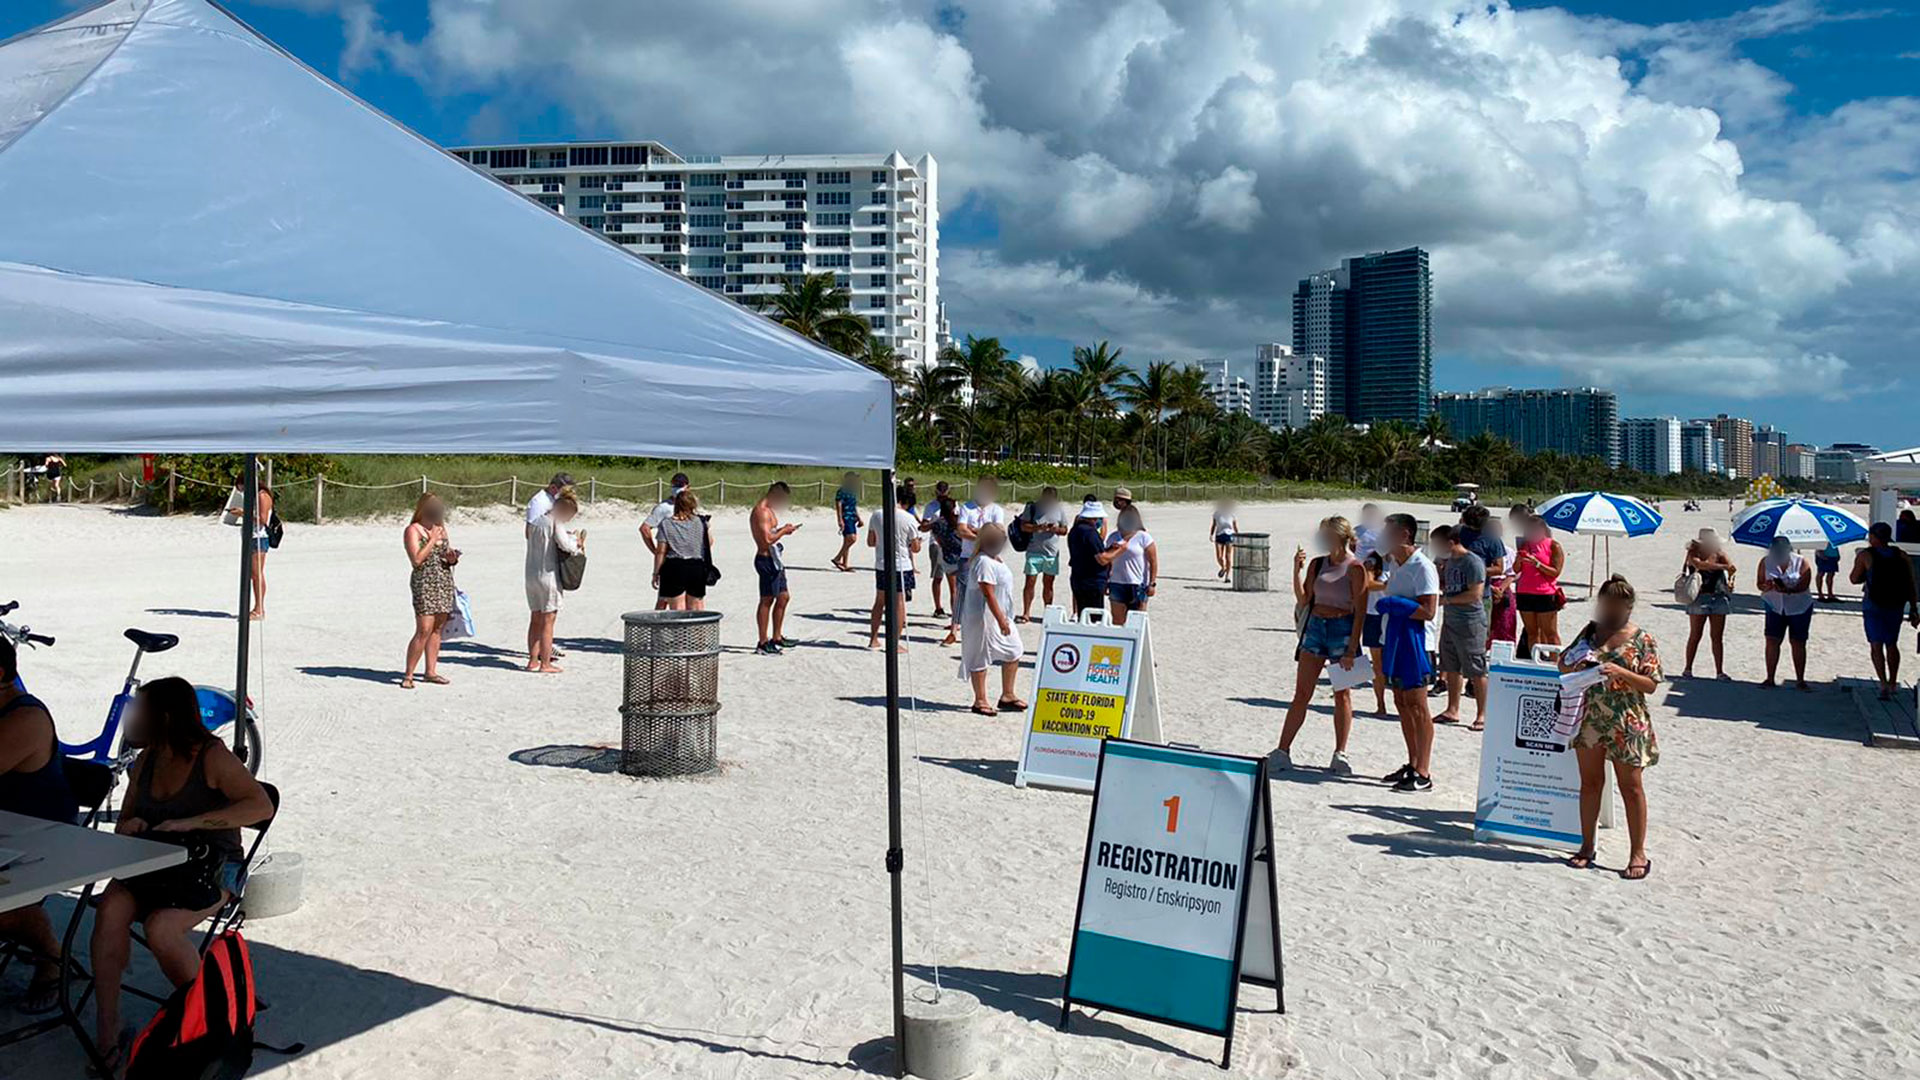 Miami Beach comenzó a vacunar contra el COVID-19 en la playa: “Los esperamos en la arena, hasta que no queden más dosis” - Infobae